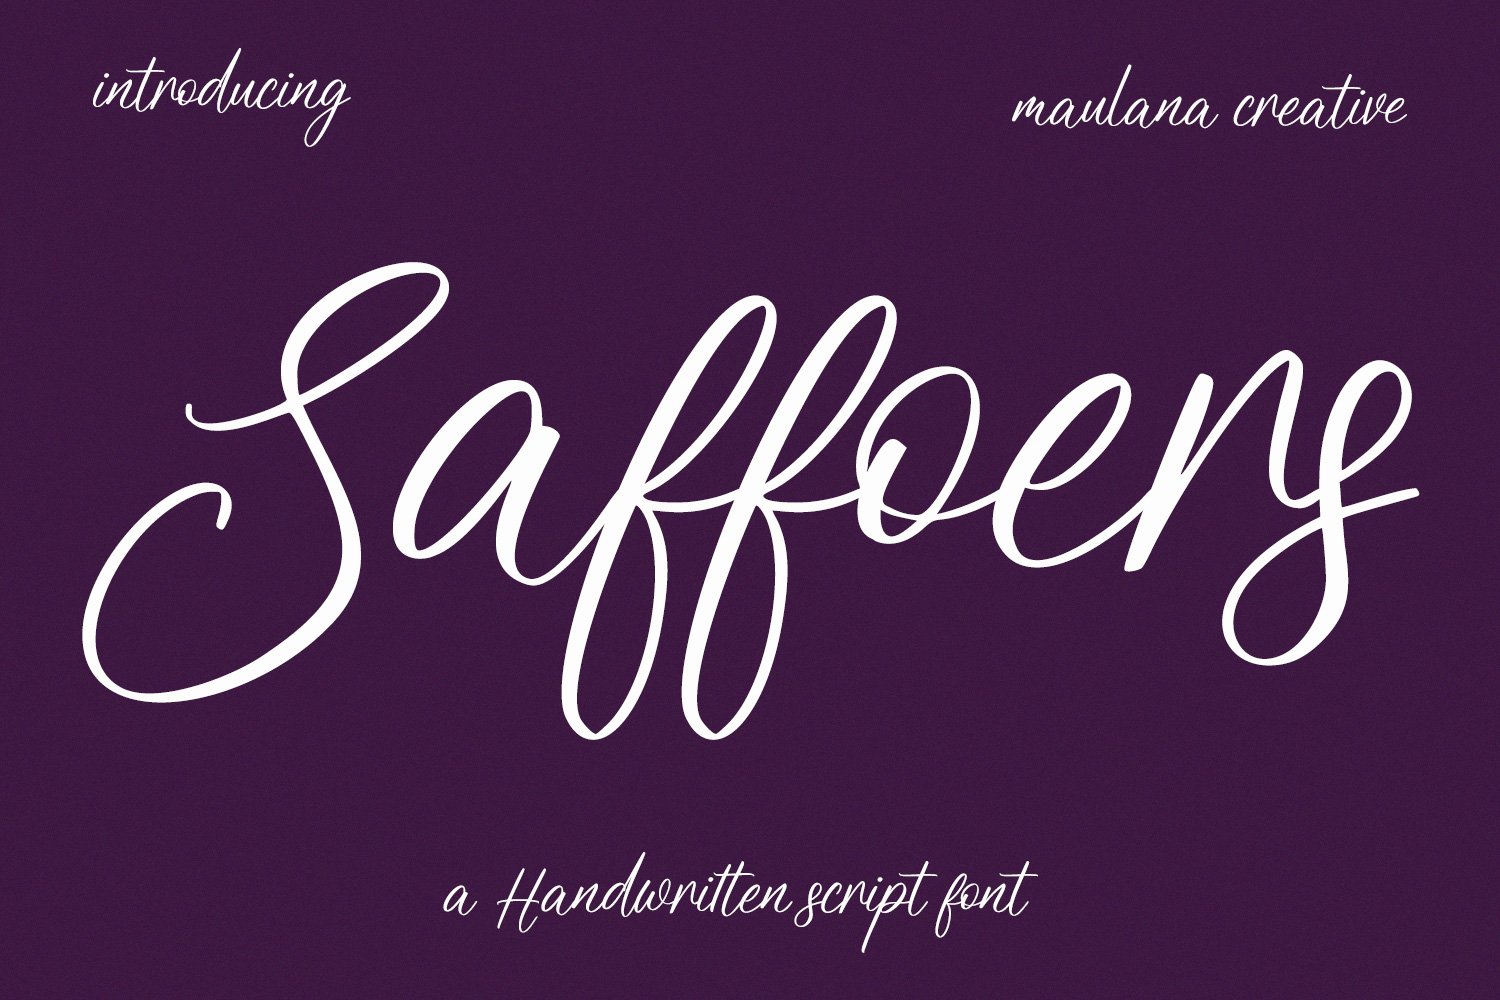 Saffoers Script Font cover image.